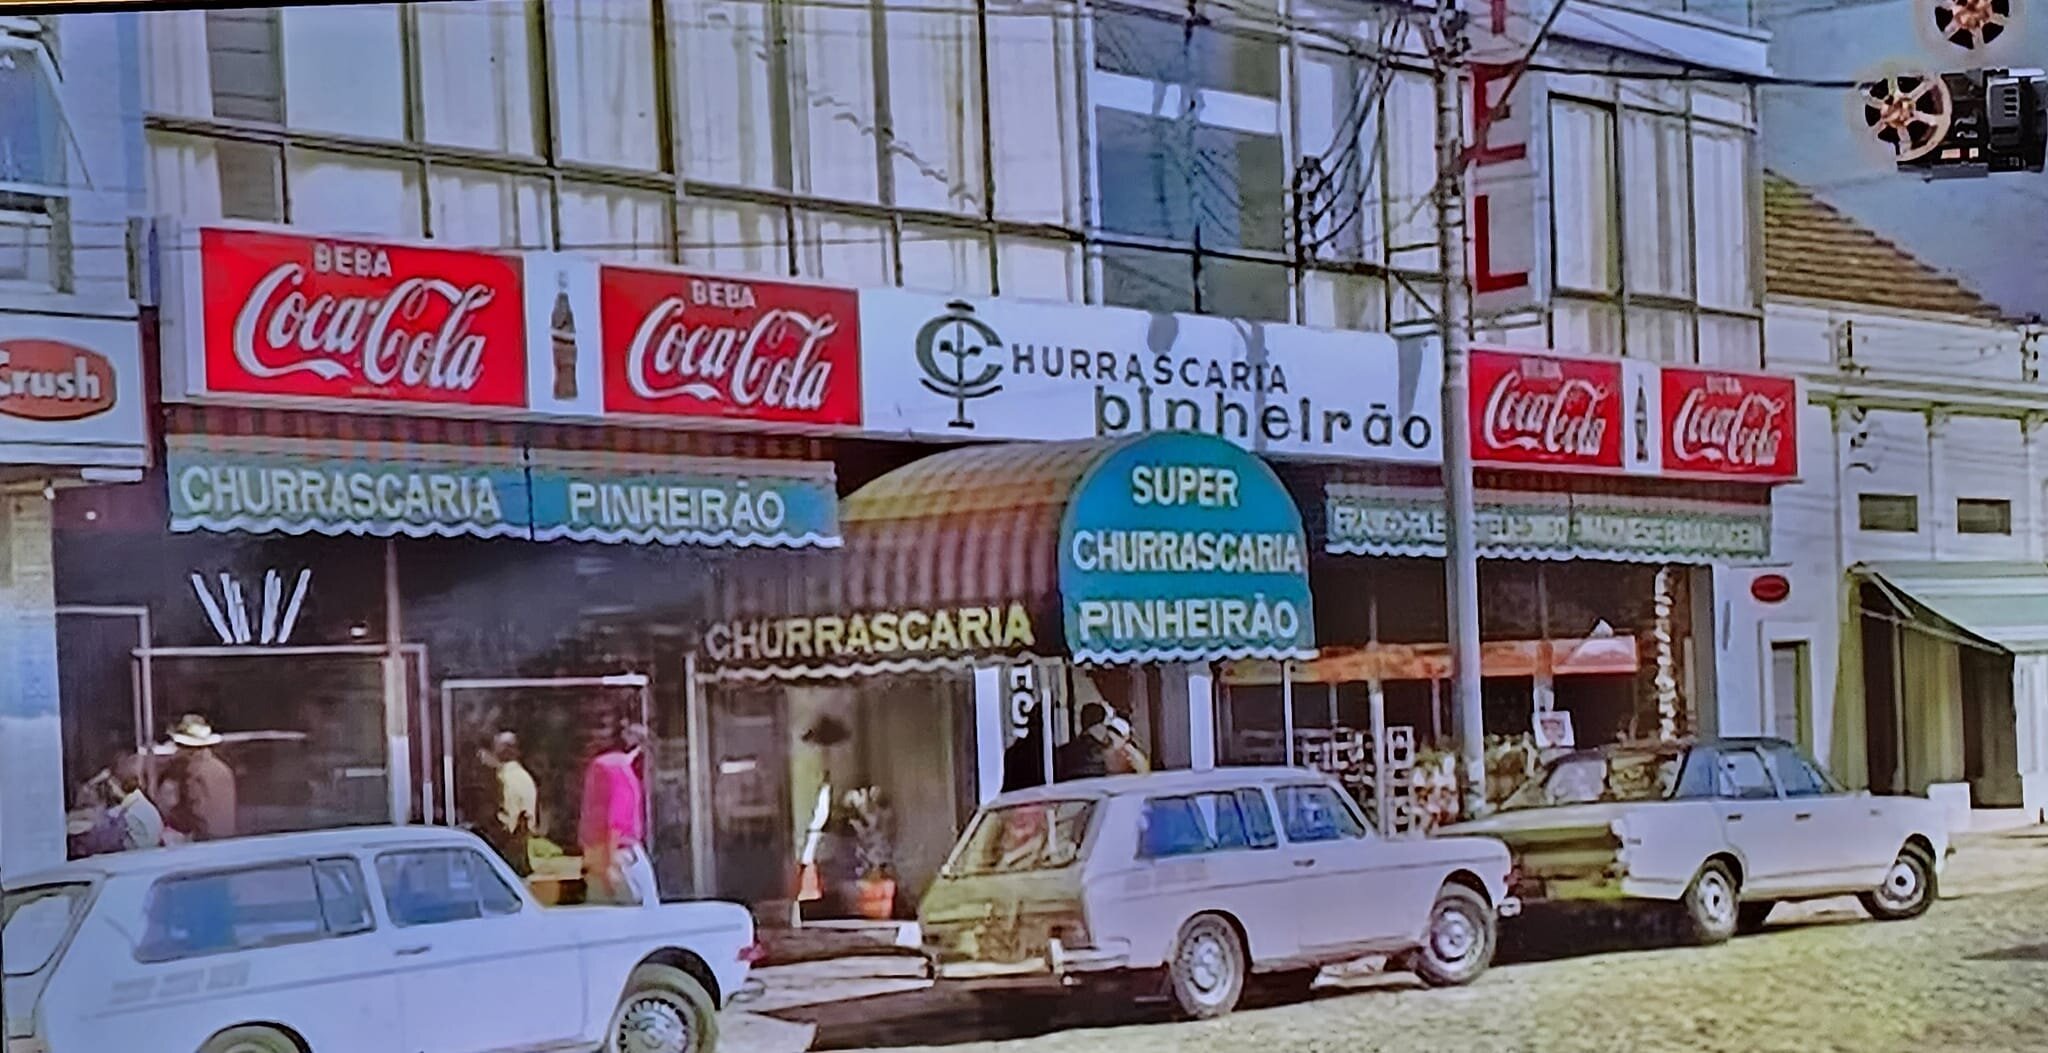 Churrascaria Pinheirão - década de 1970